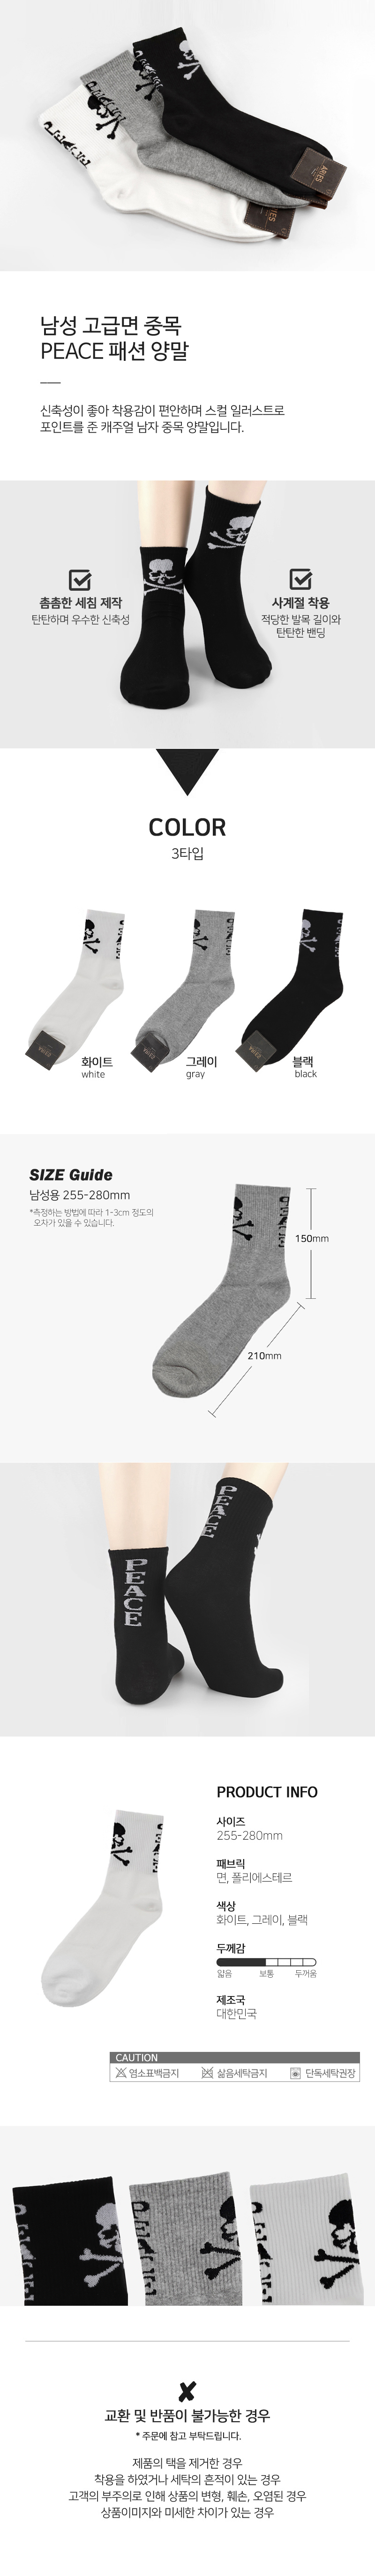 socks_00118.jpg